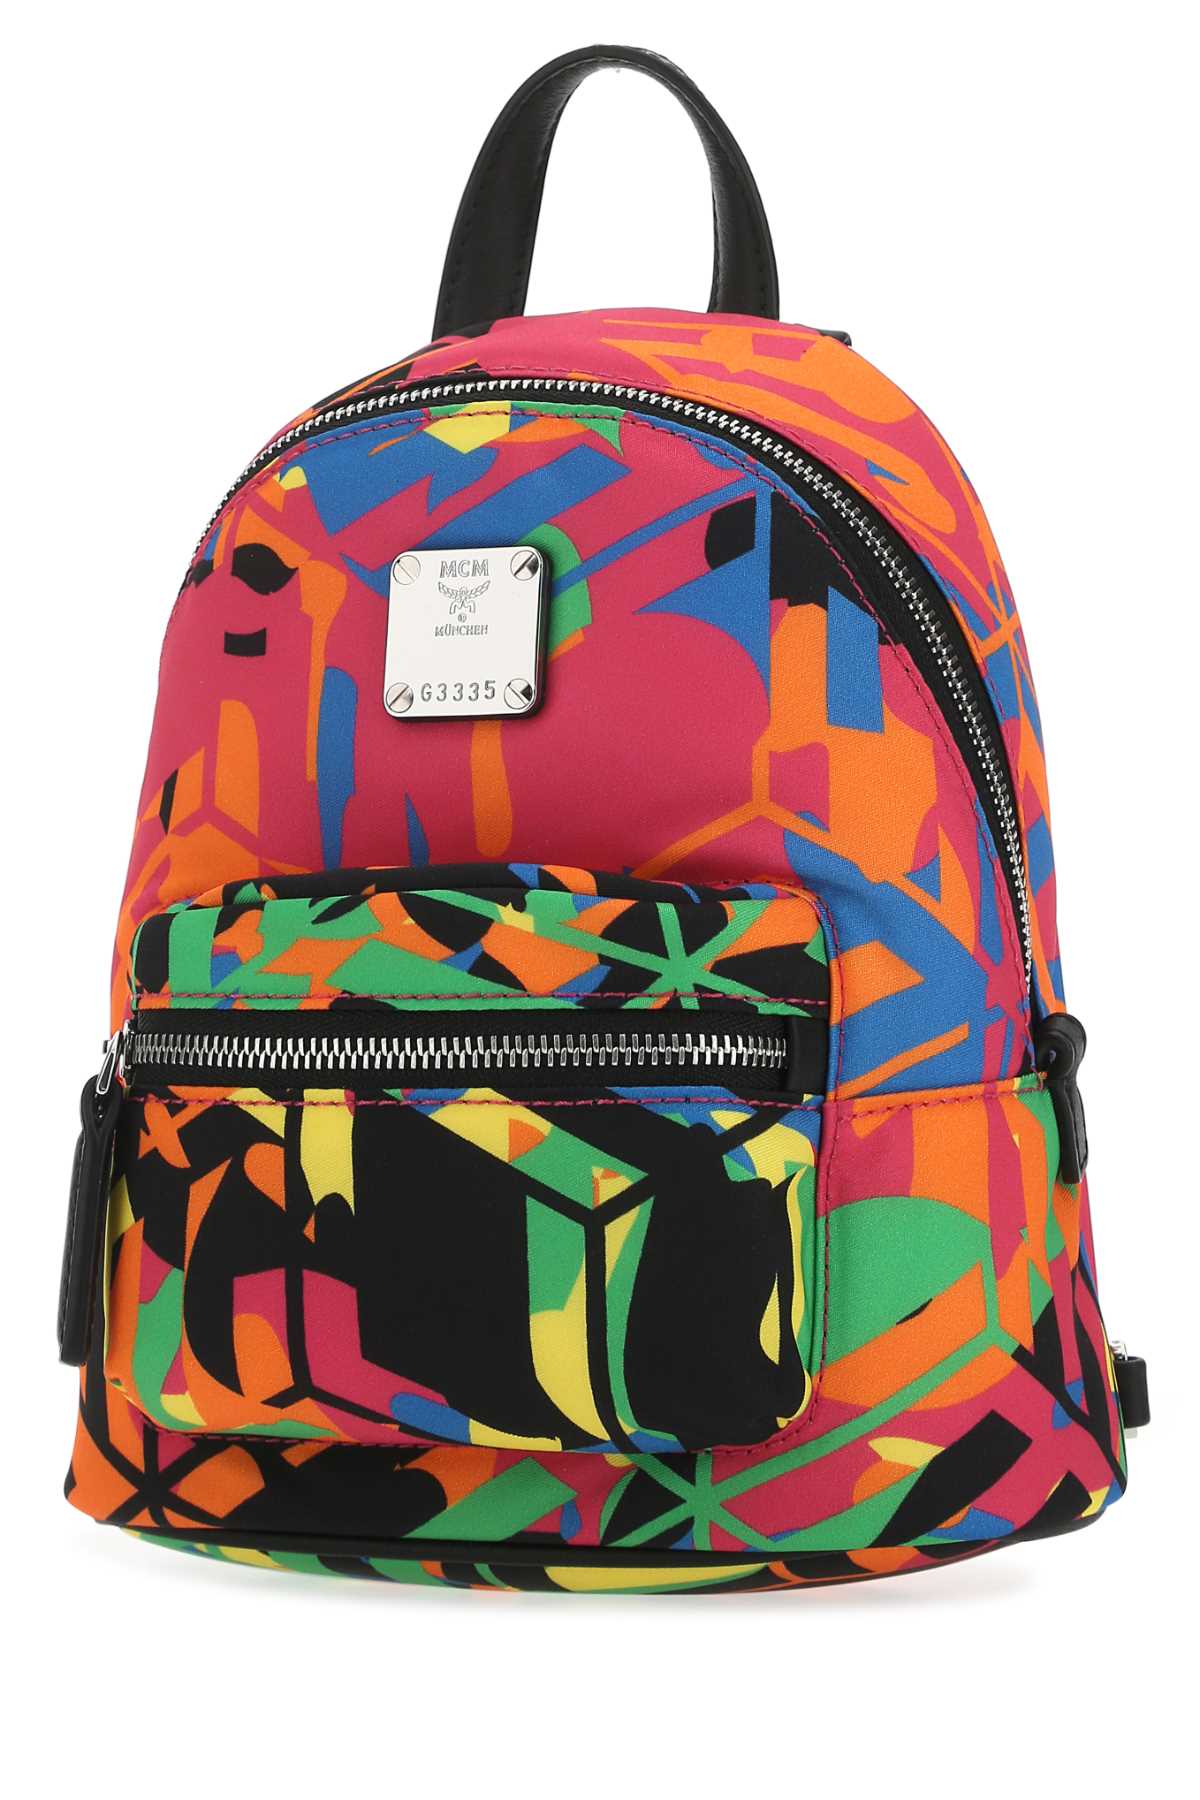 Mcm Printed Nylon Backpack In Mt